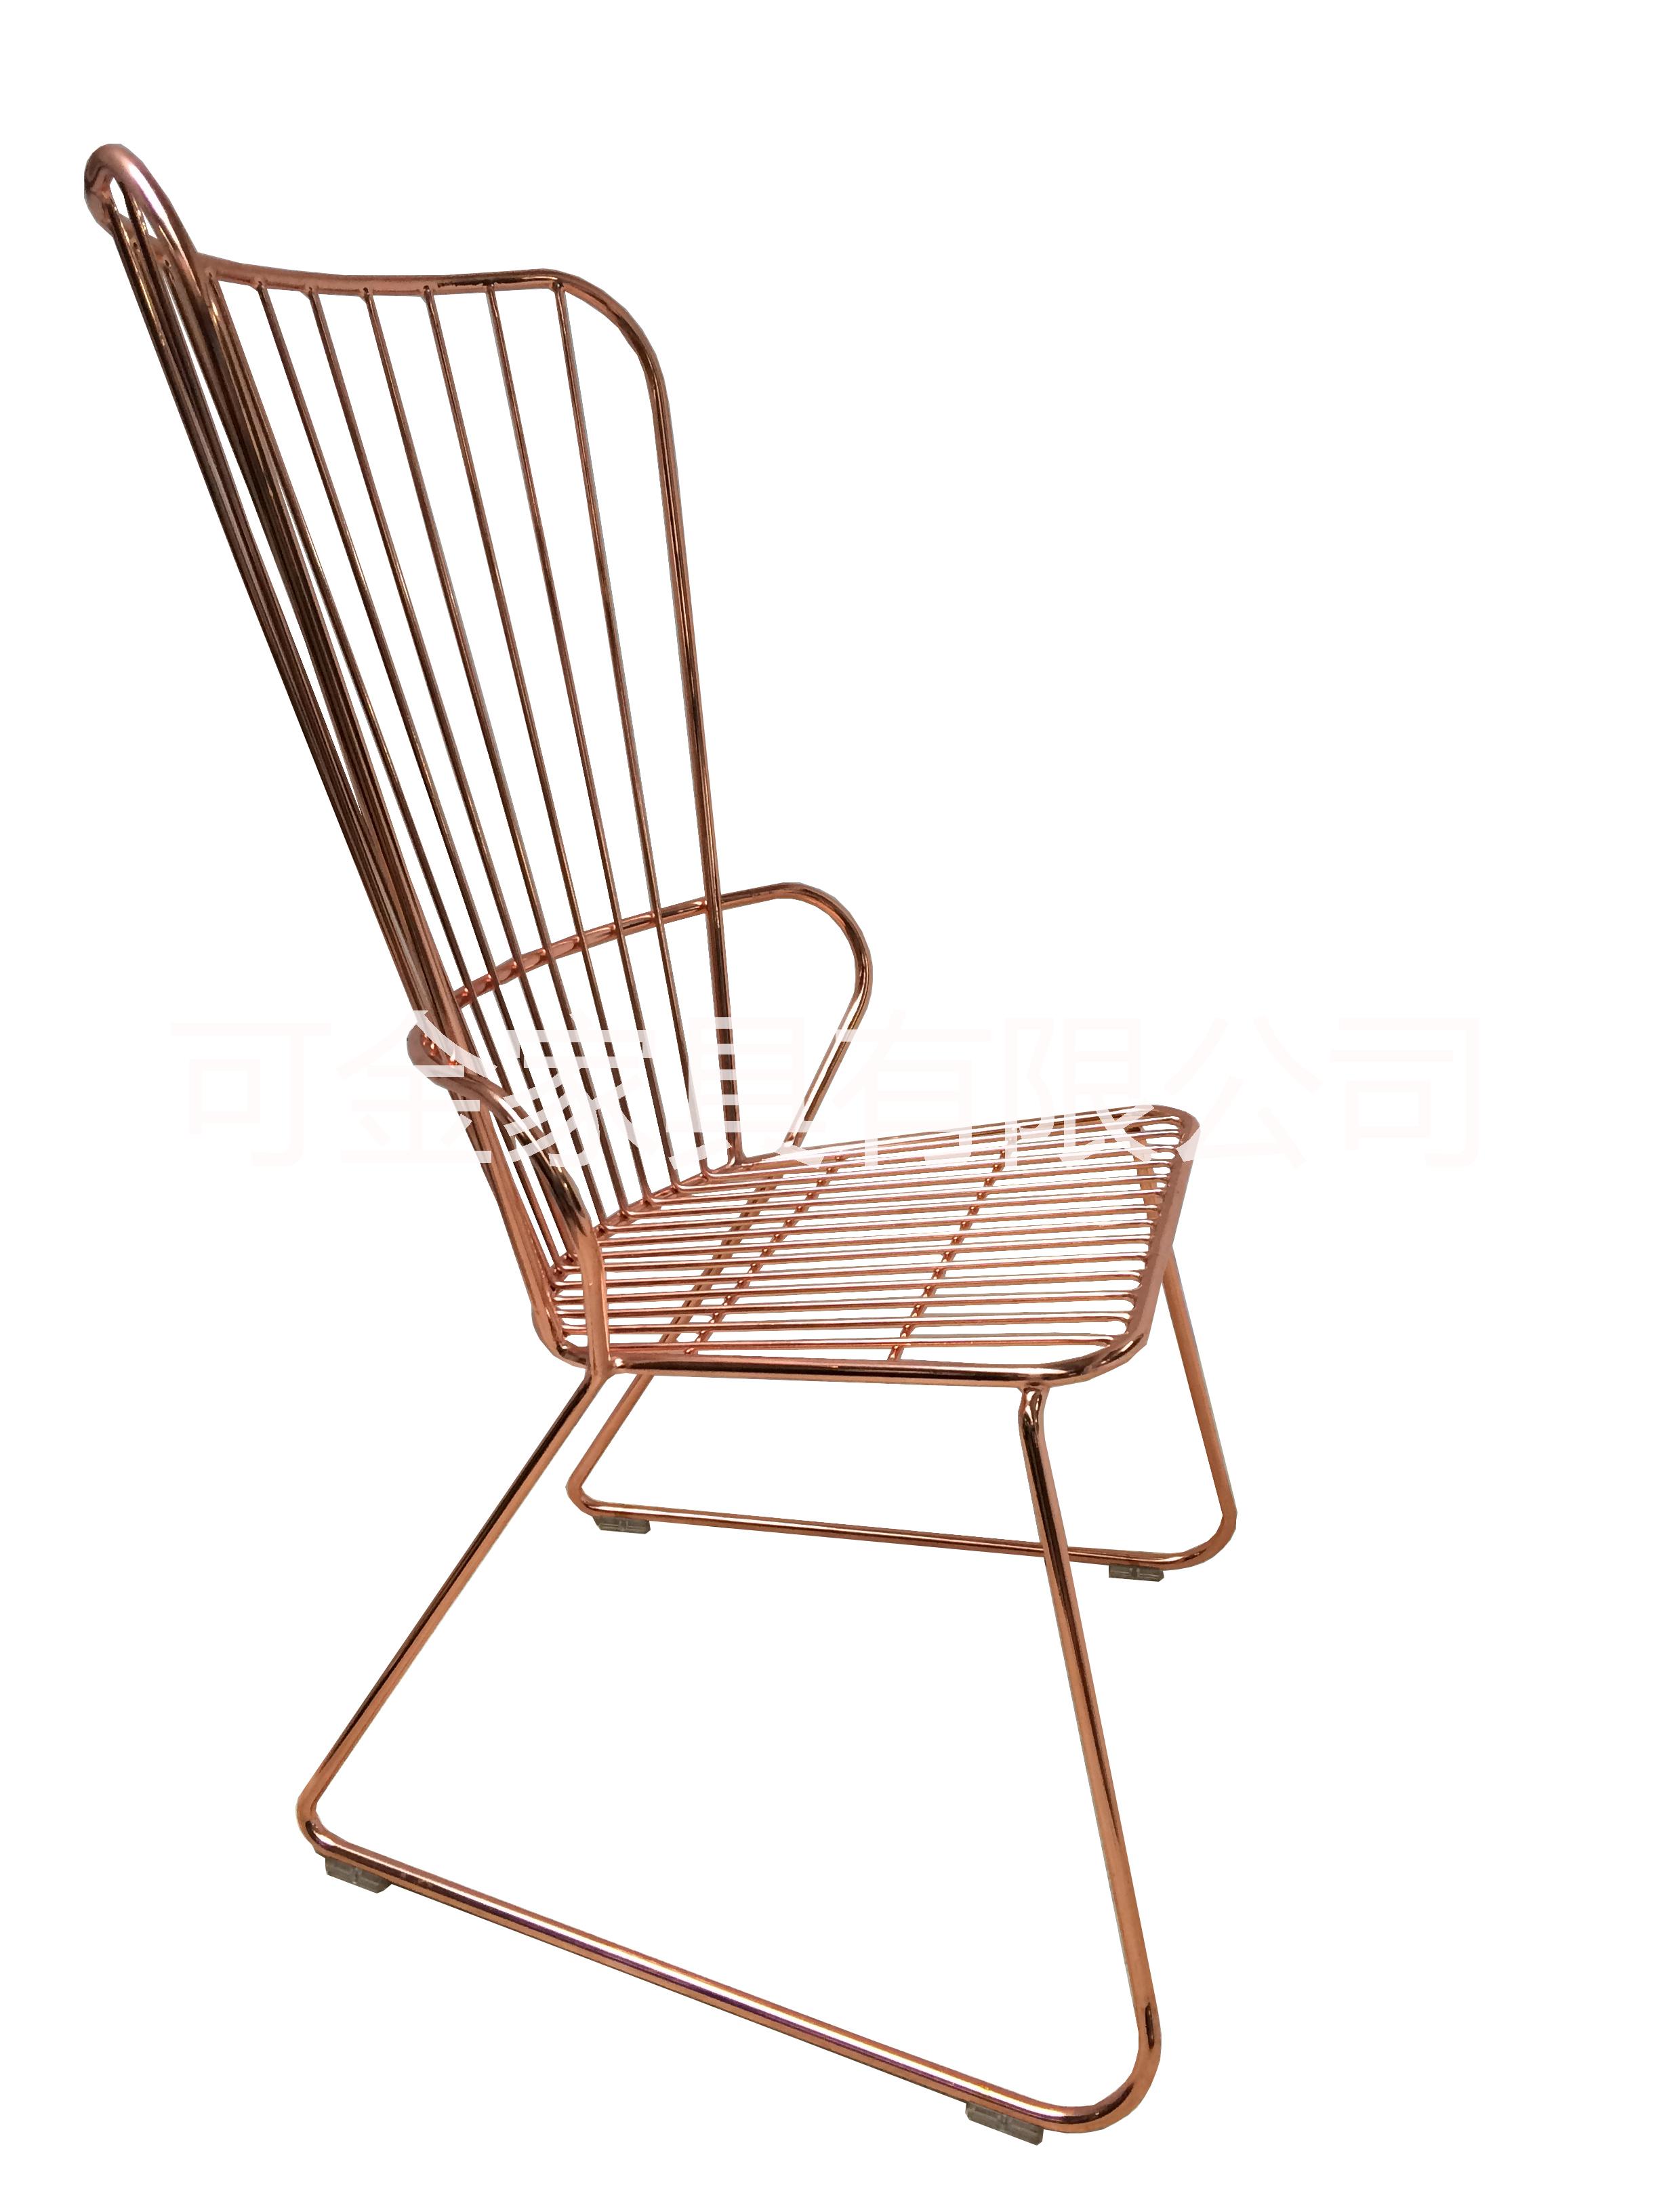 金属铁线高背椅铁线椅 花园休闲椅 电镀烤漆的休闲铁线椅 户外金属椅 金属铁线休闲高背椅